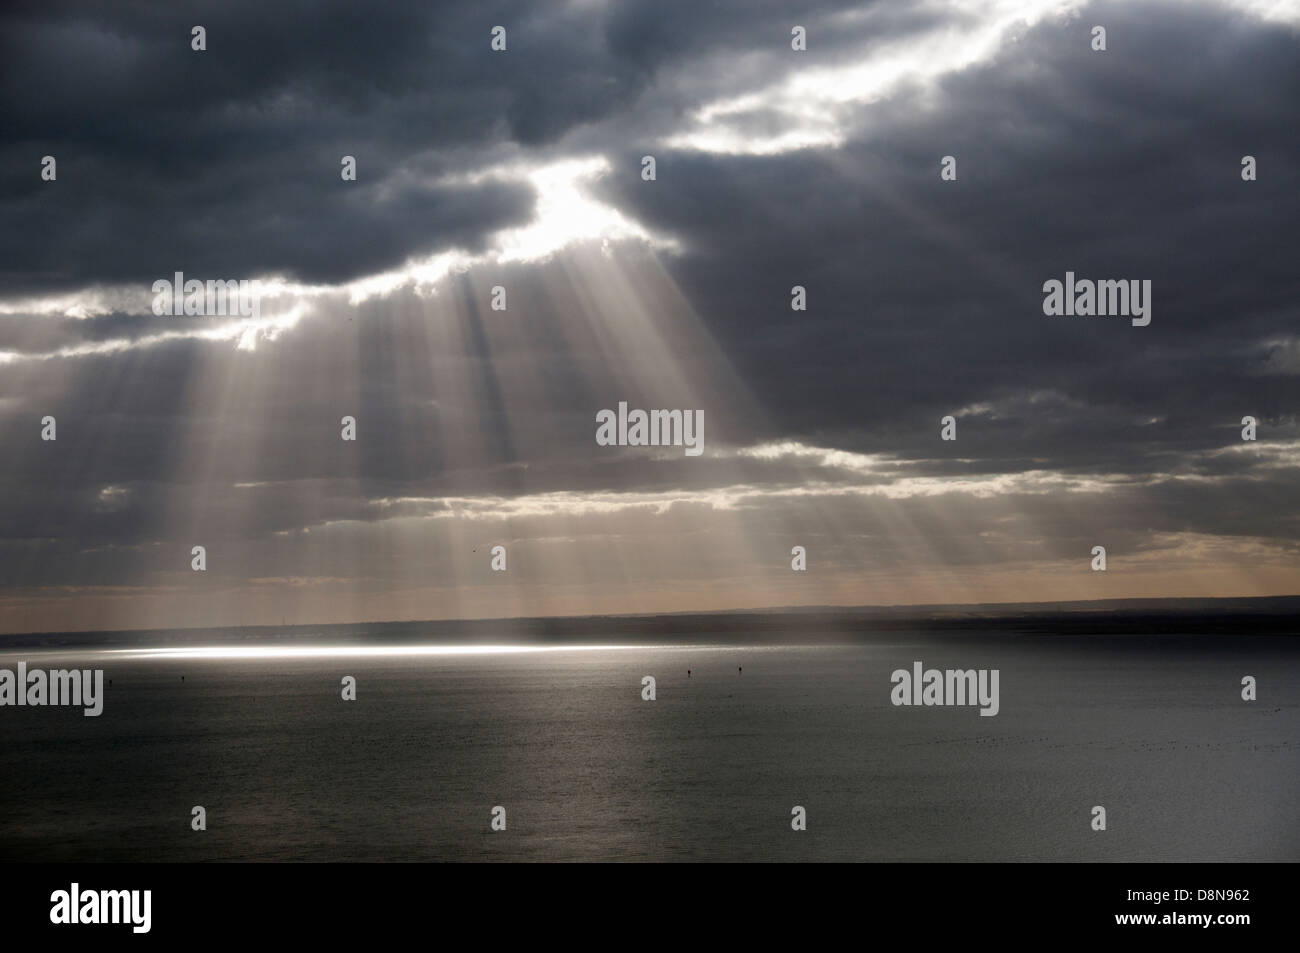 Los haces de luz a través de nubes de tormenta en la costa del mar, con vista al mar en calma Foto de stock